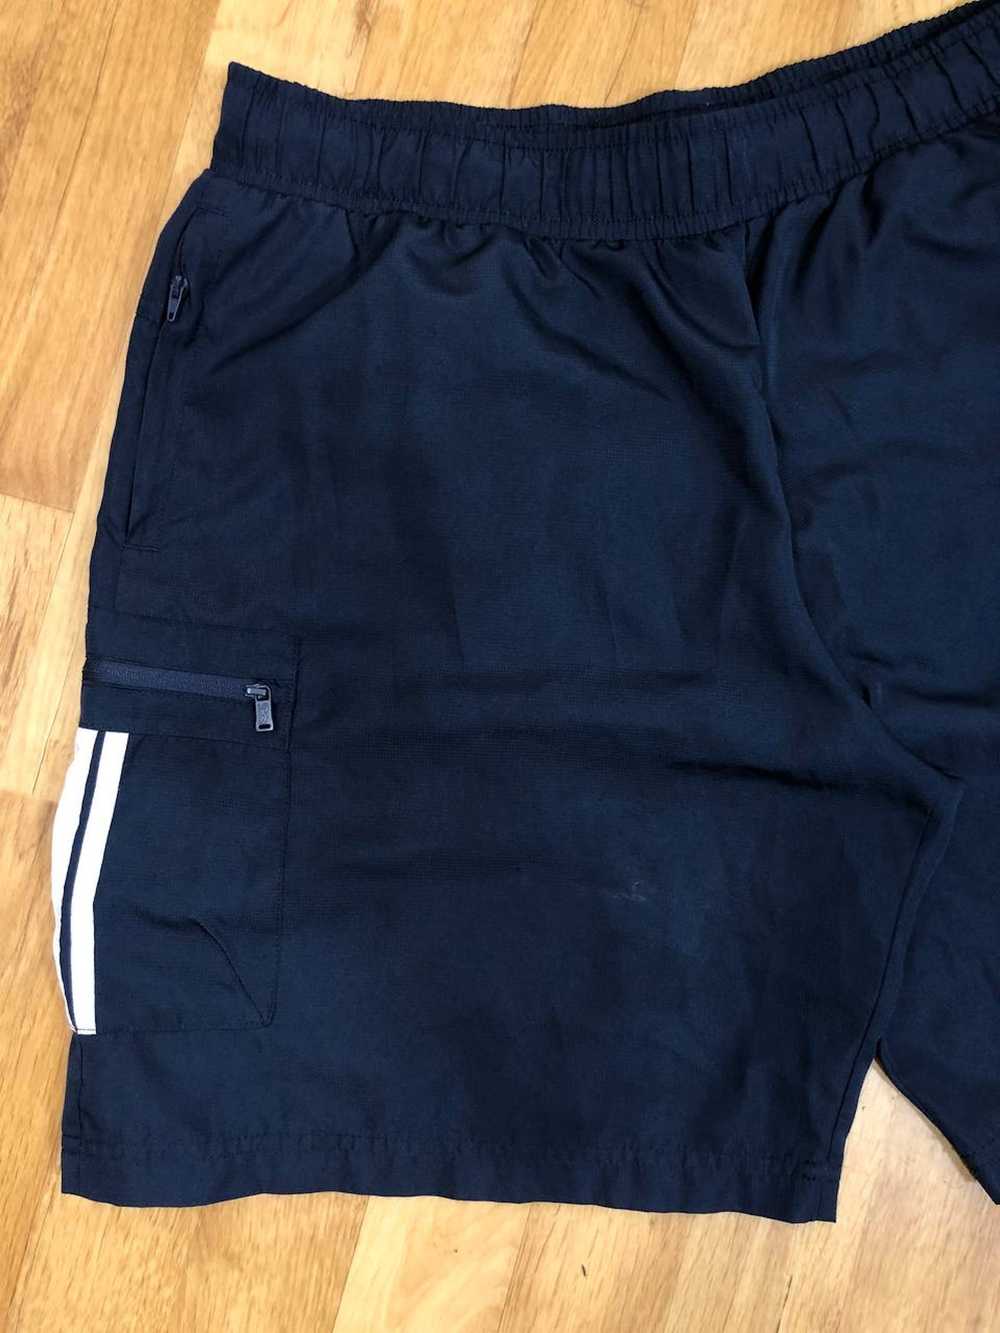 Streetwear × Tapout × Vintage Men’s Blue Shorts S… - image 2